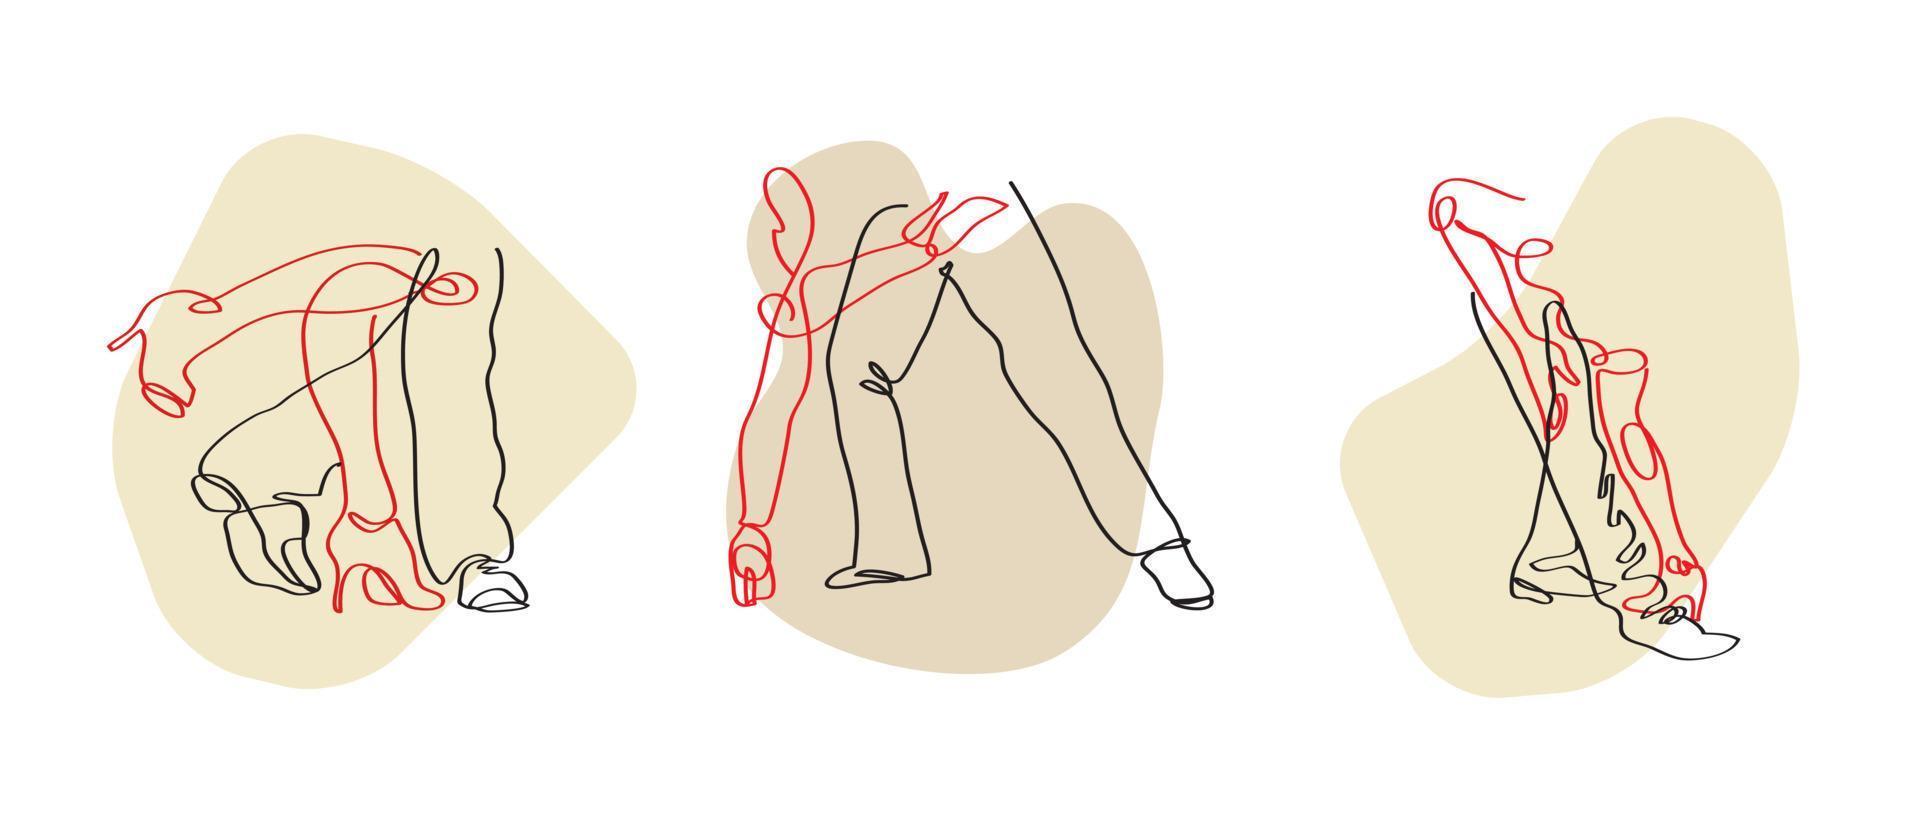 pose de danse de tango linéaire abstraite. jambes de tango dansantes, image vectorielle lineart, minimalisme, amateurs de danse. illustration vectorielle dessinés à la main. vecteur